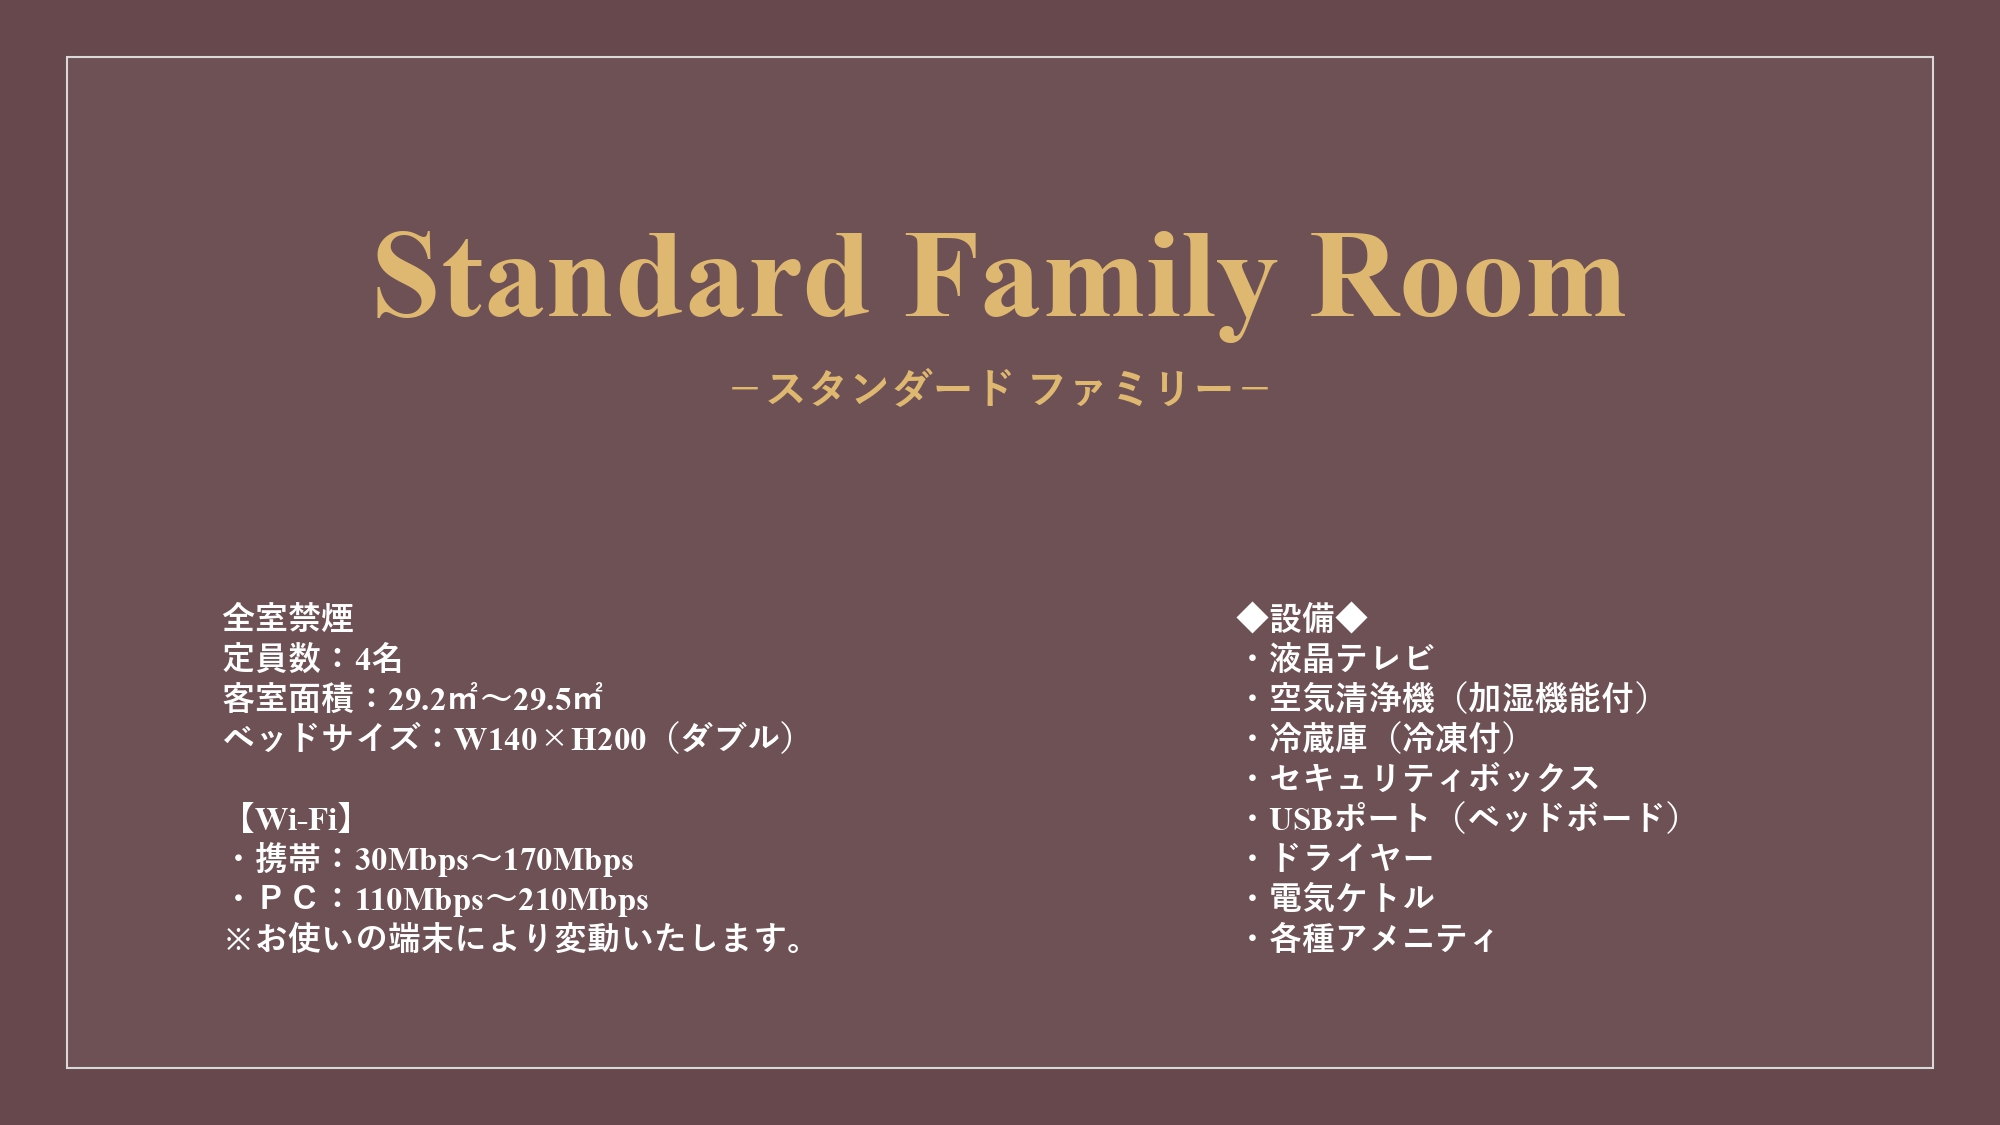 Standard Family Room